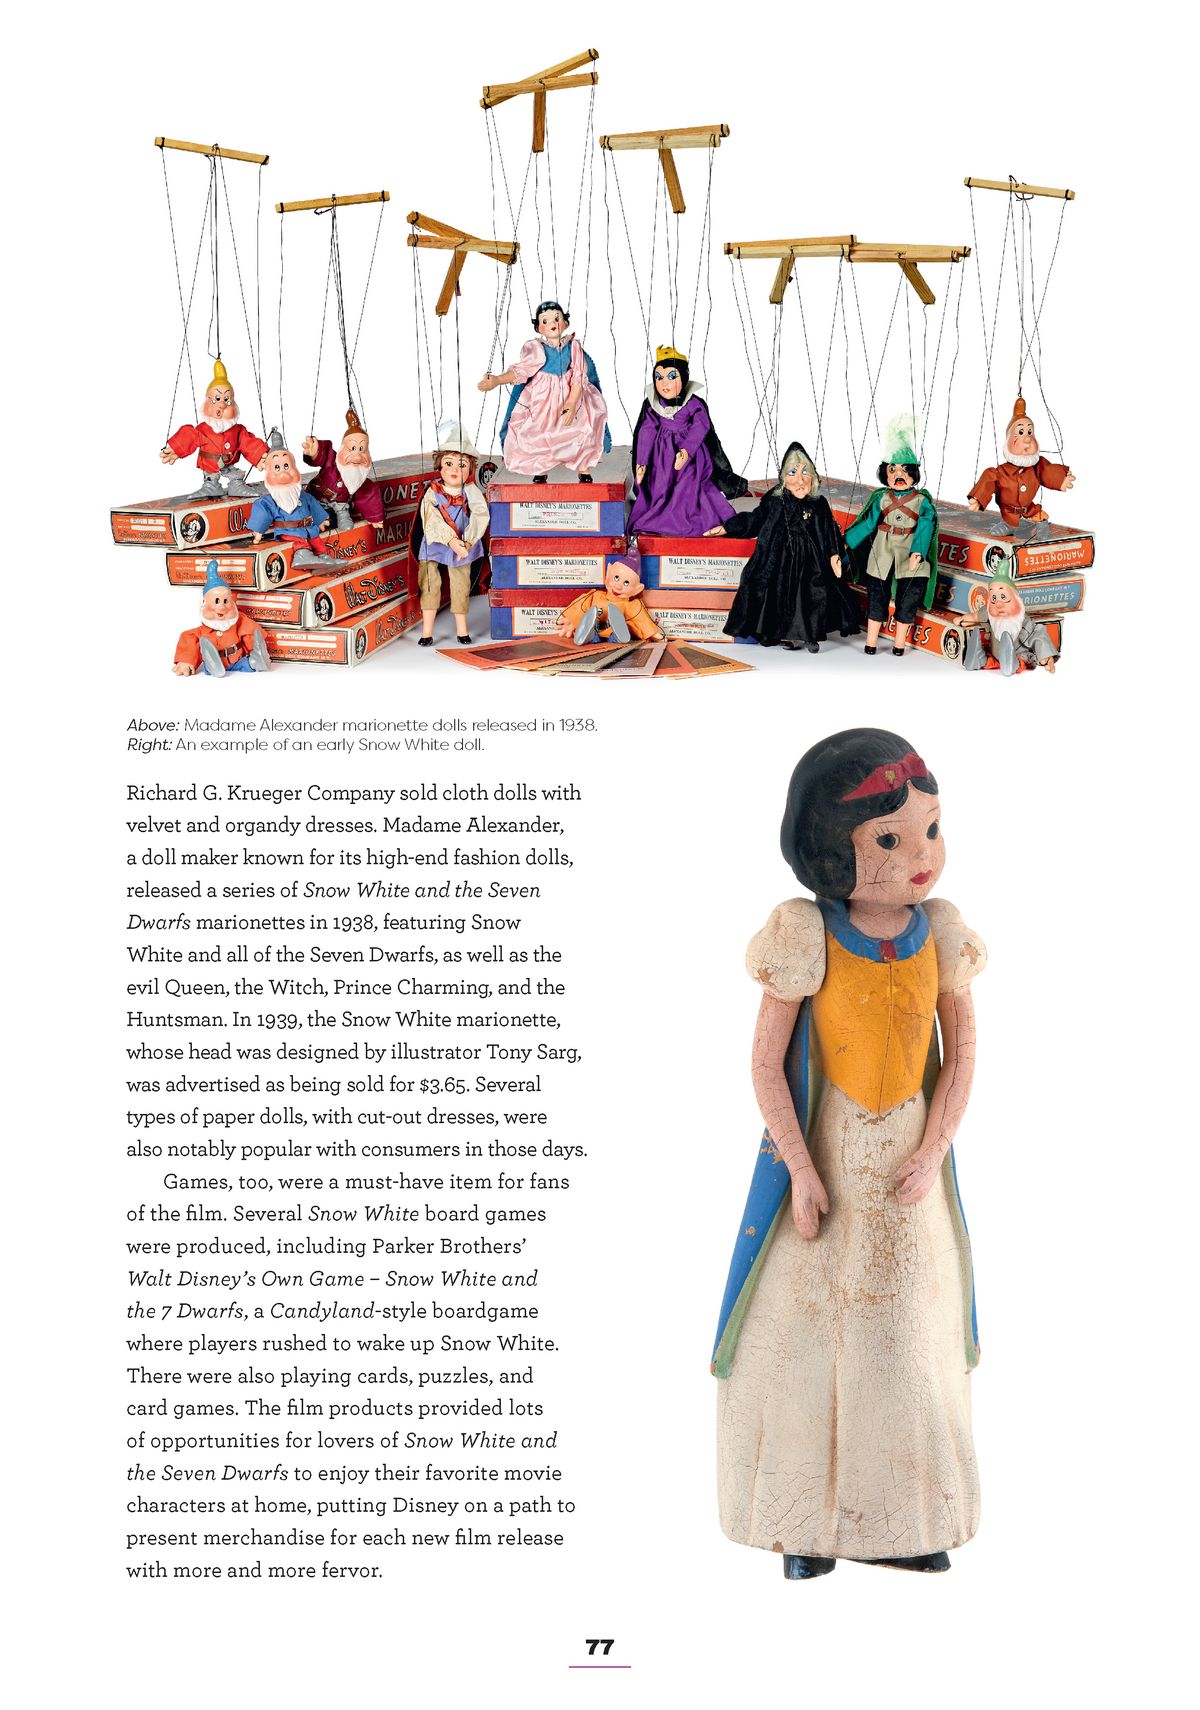 una pagina di Disney Princess: Beyond the Tiara.  la maggior parte è testo, ma in alto c'è un'immagine di pupazzi di marionette, a tema con Biancaneve, i nani, la regina cattiva, il principe e il cacciatore.  a sinistra c'è una bambola di porcellana bianca come la neve 